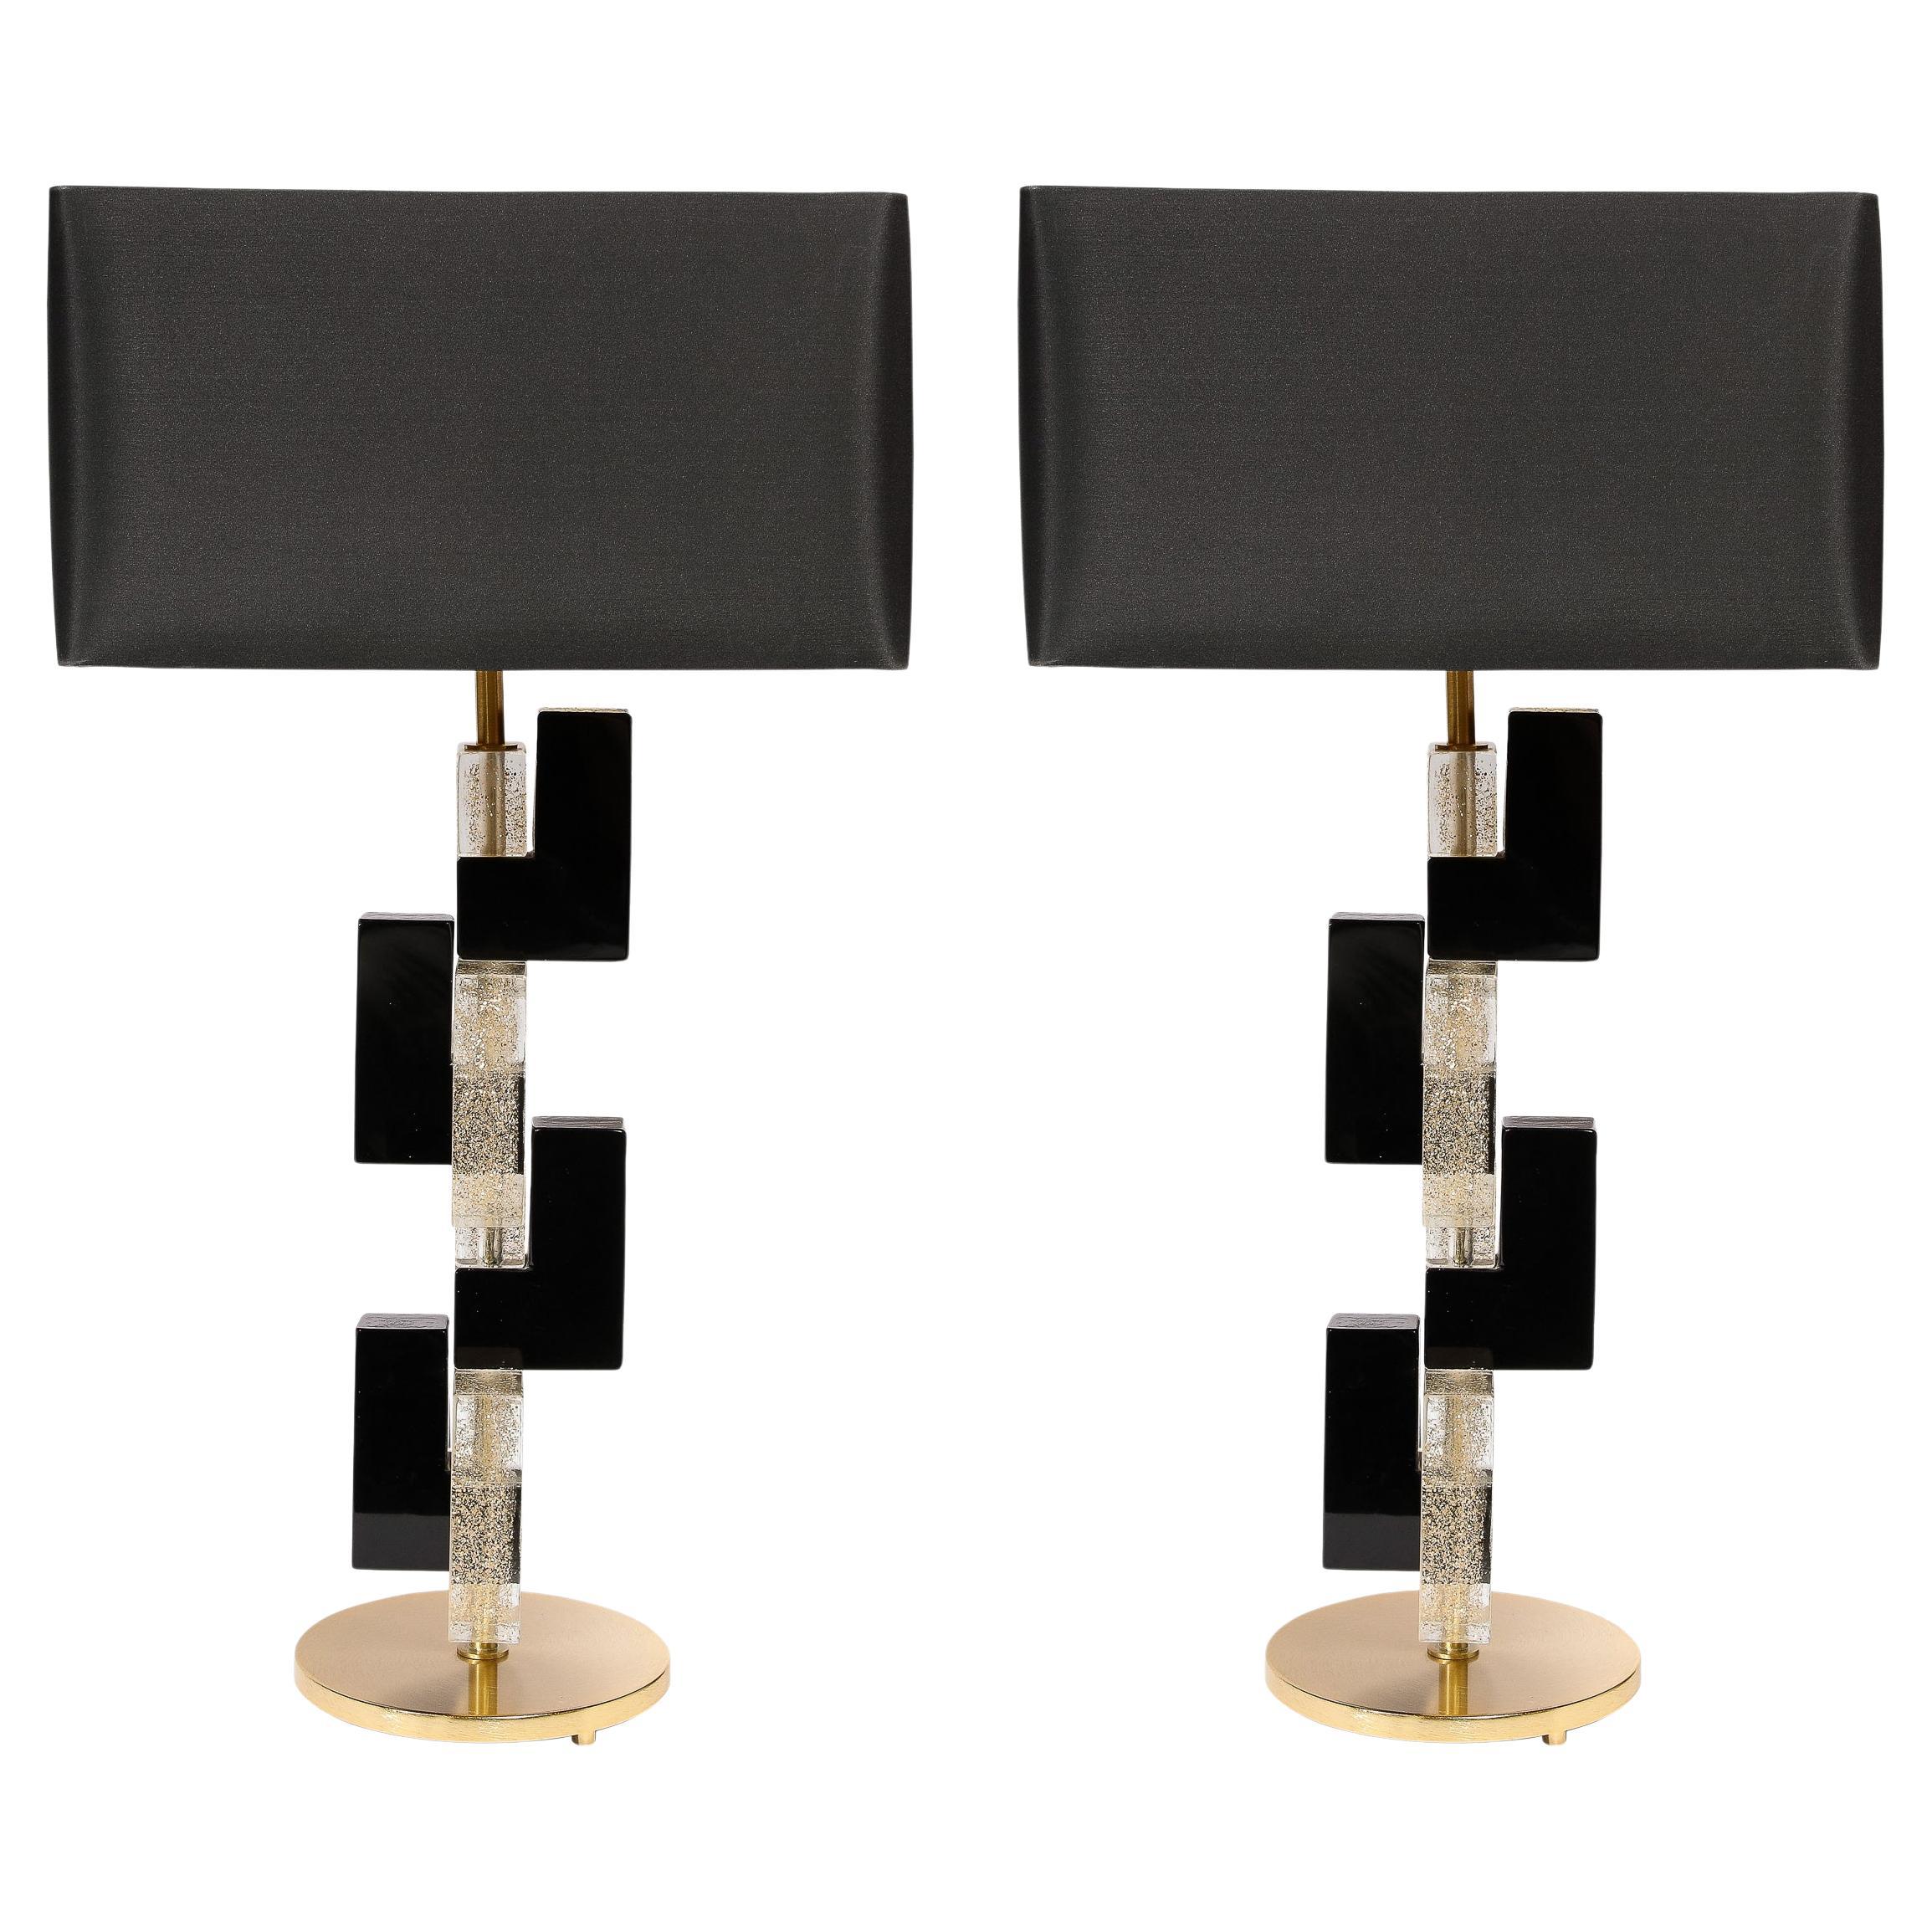 Rechteckige, mundgeblasene Murano-Tischlampen aus schwarzem und durchscheinendem Glas im Stil der Moderne